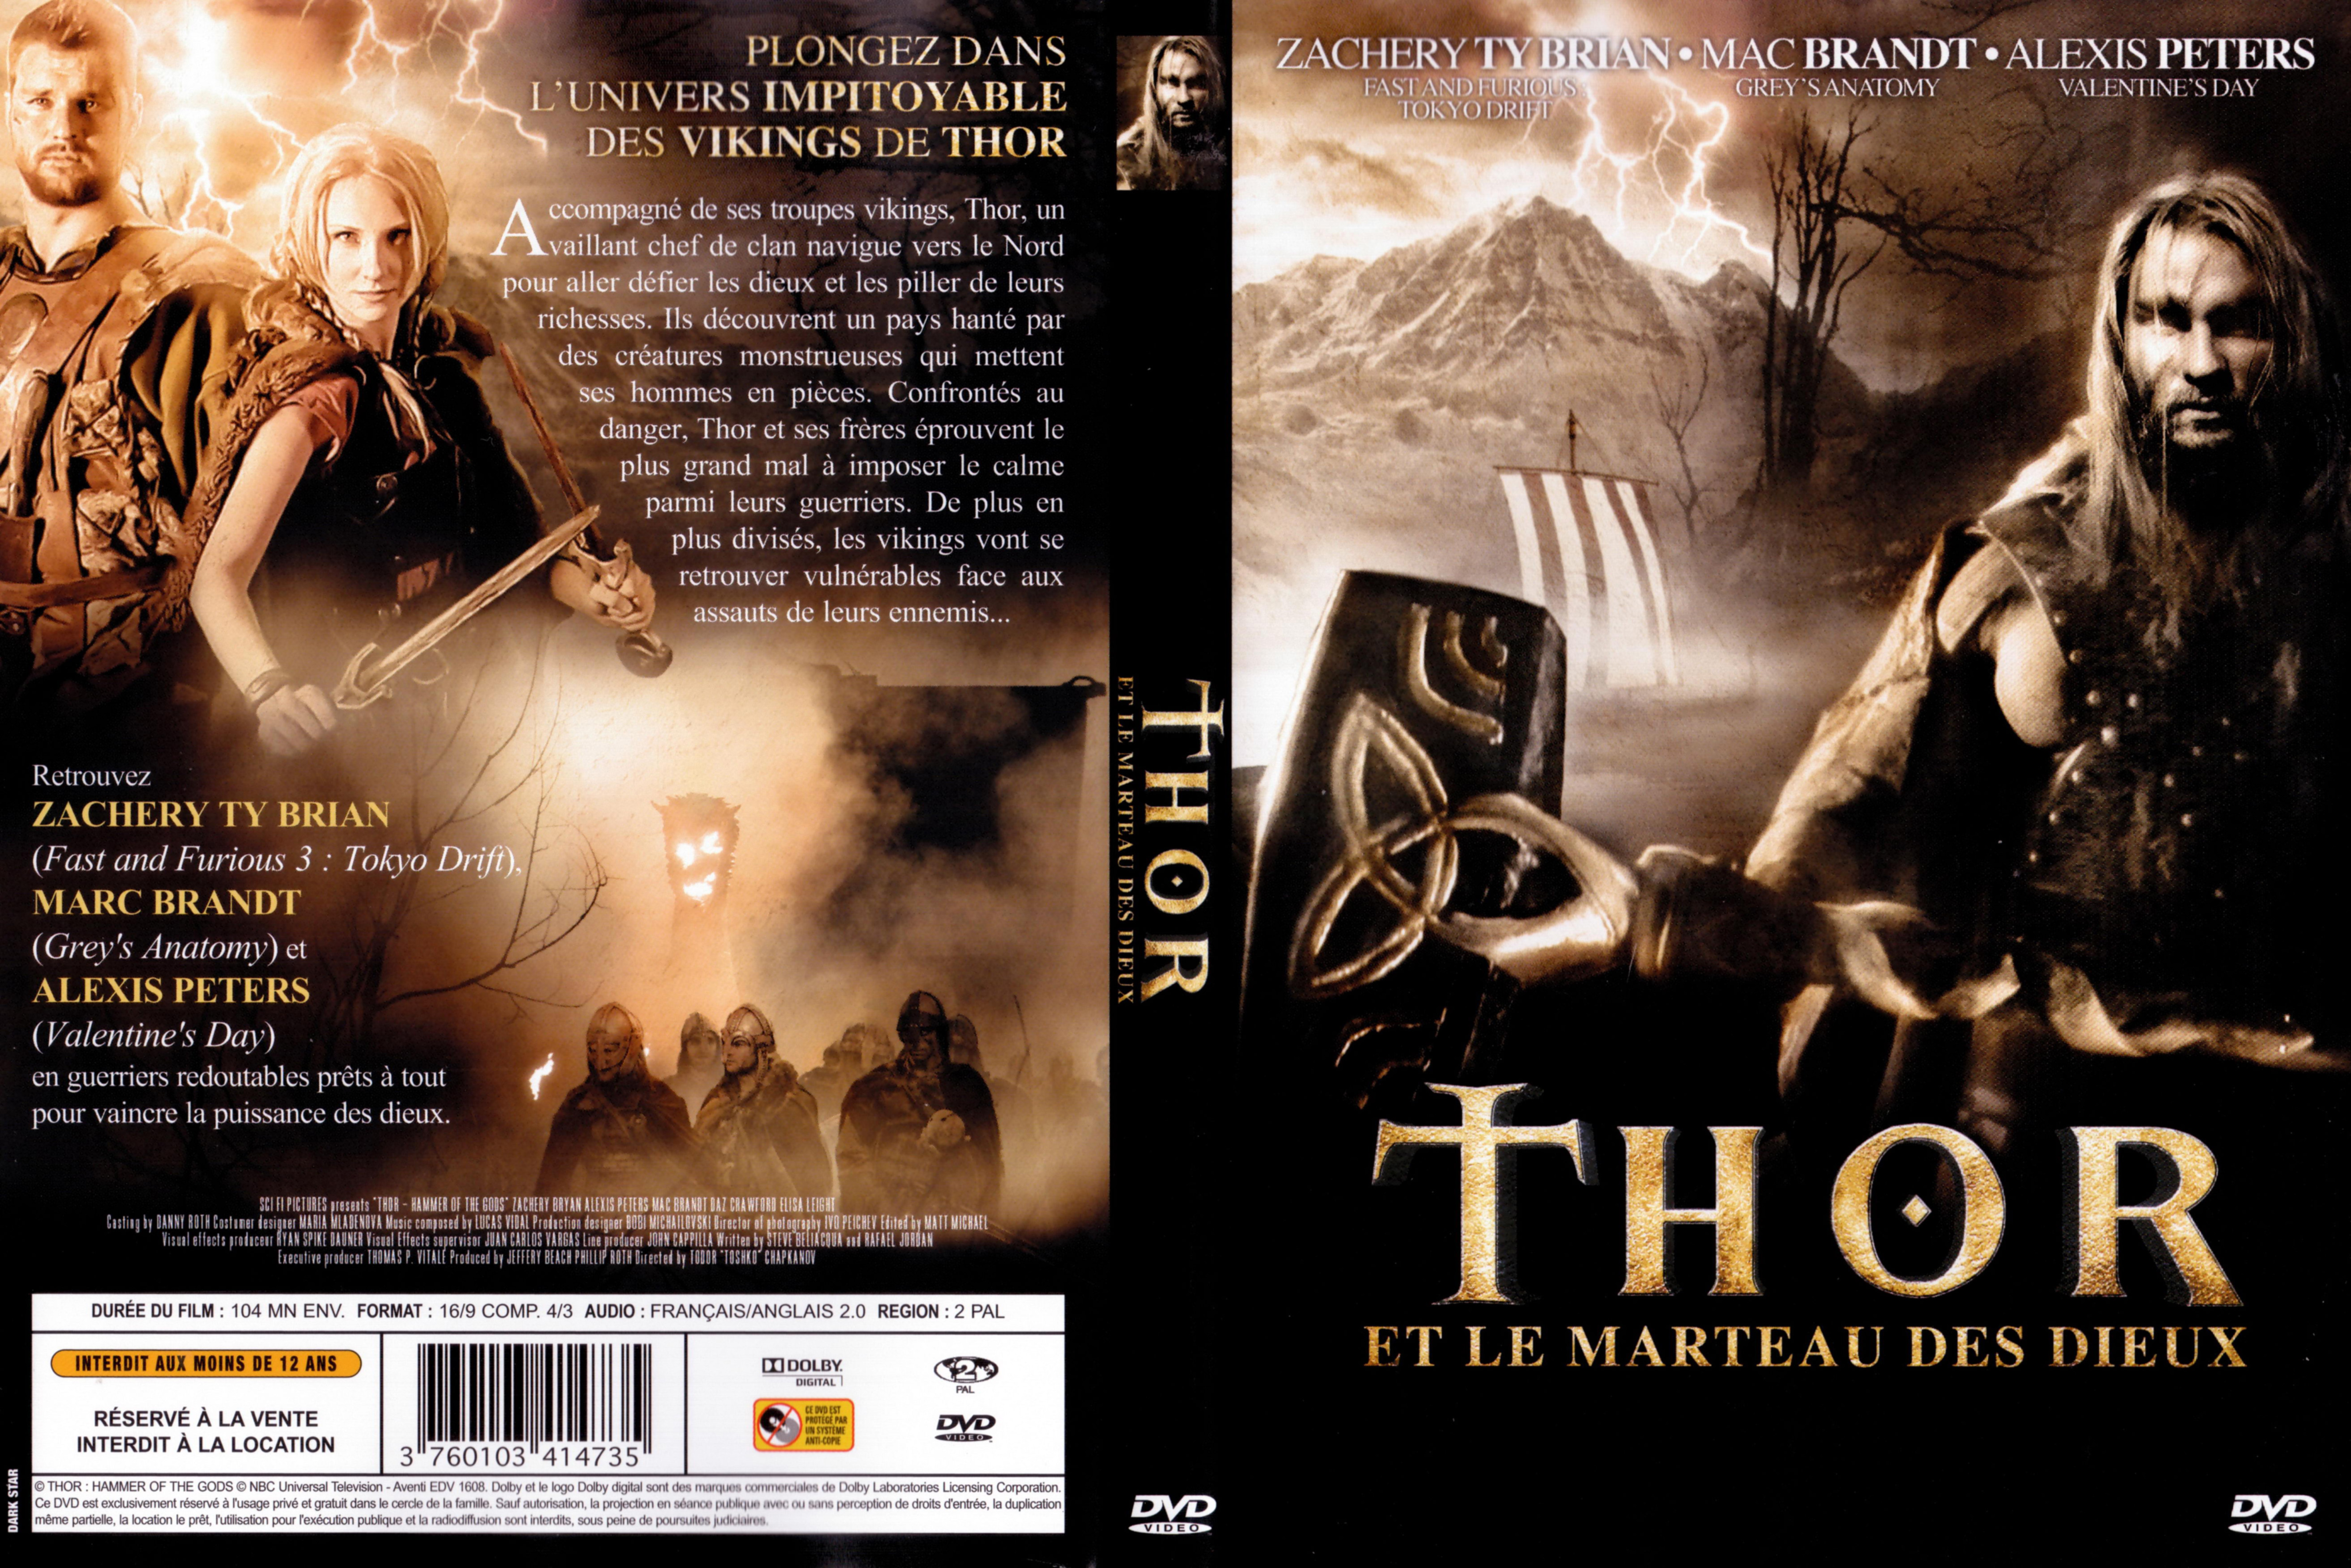 Jaquette DVD Thor et le marteau des dieux